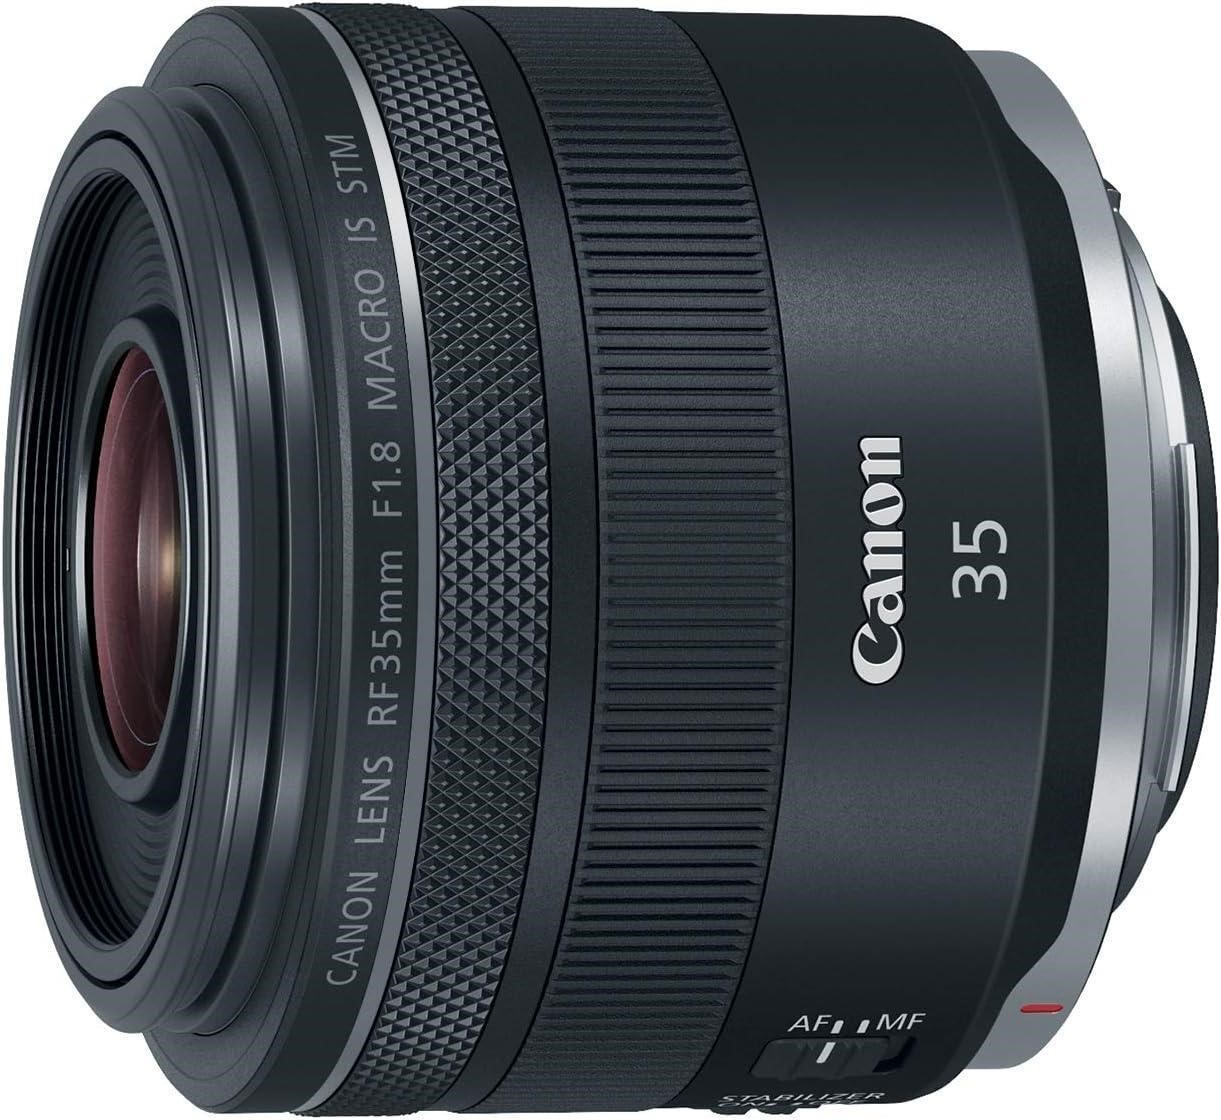 Canon RF35mm F1.8 Macro STM Lens